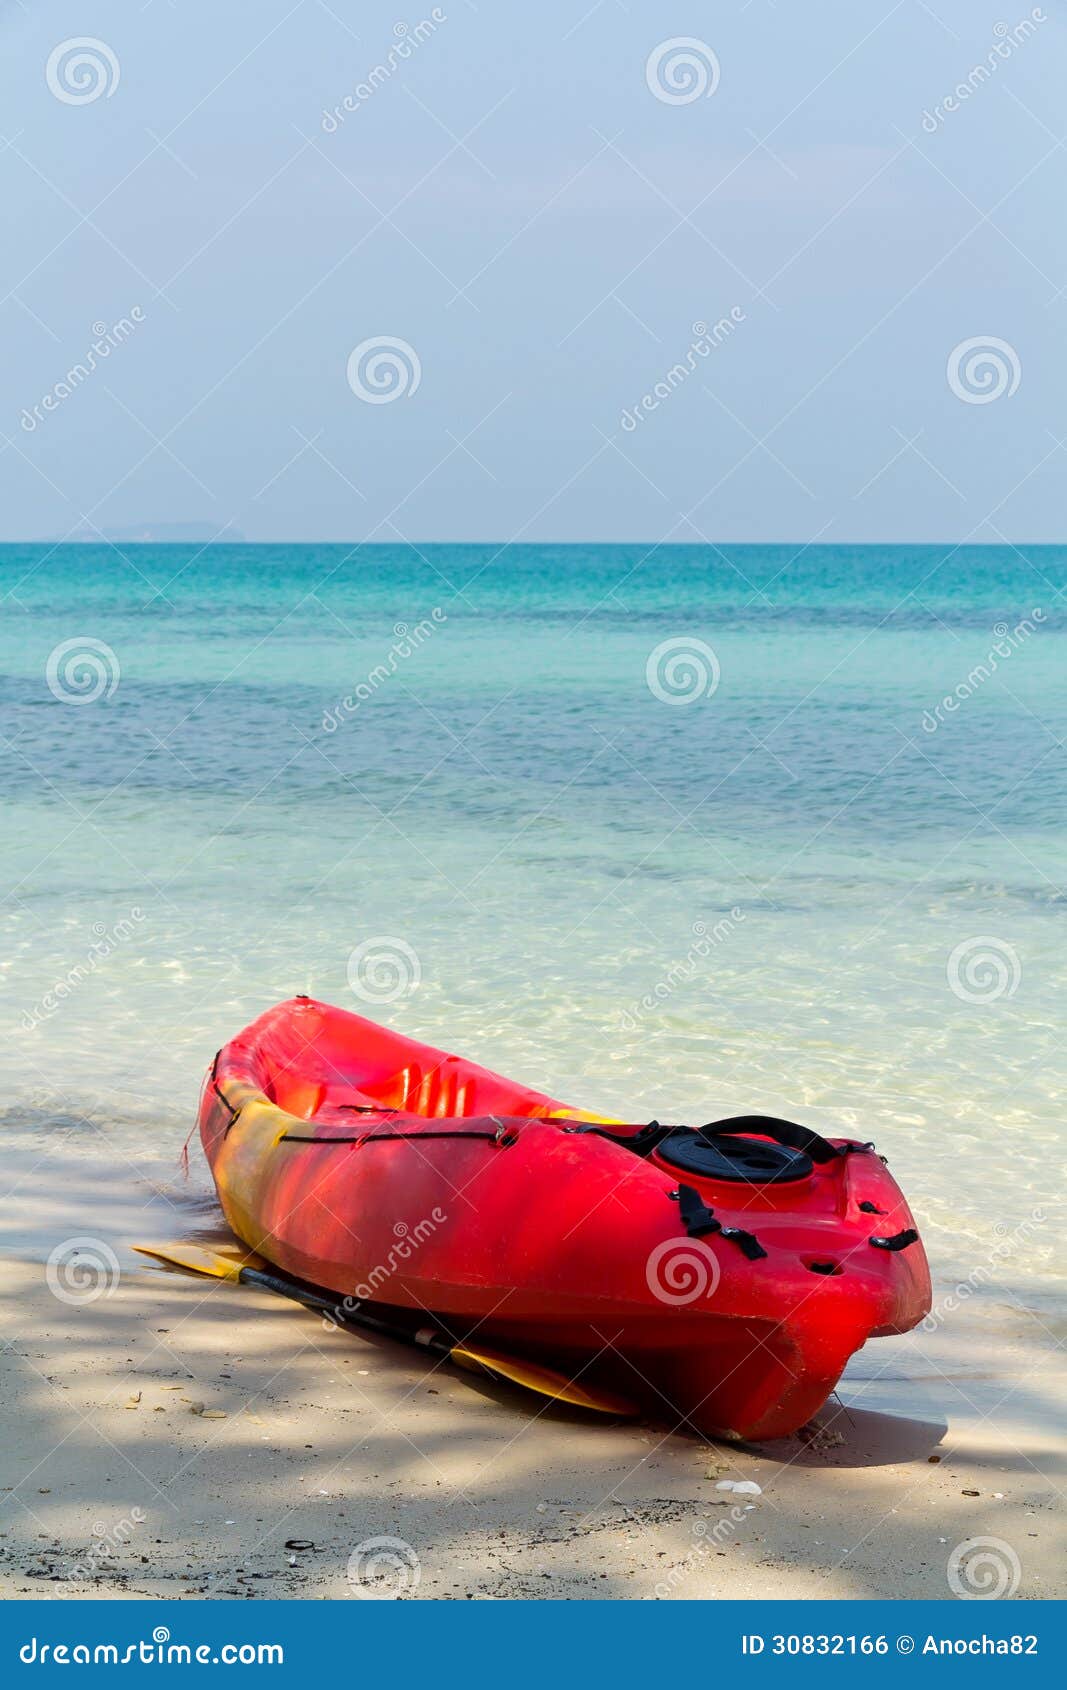 sea kayaking clipart - photo #34